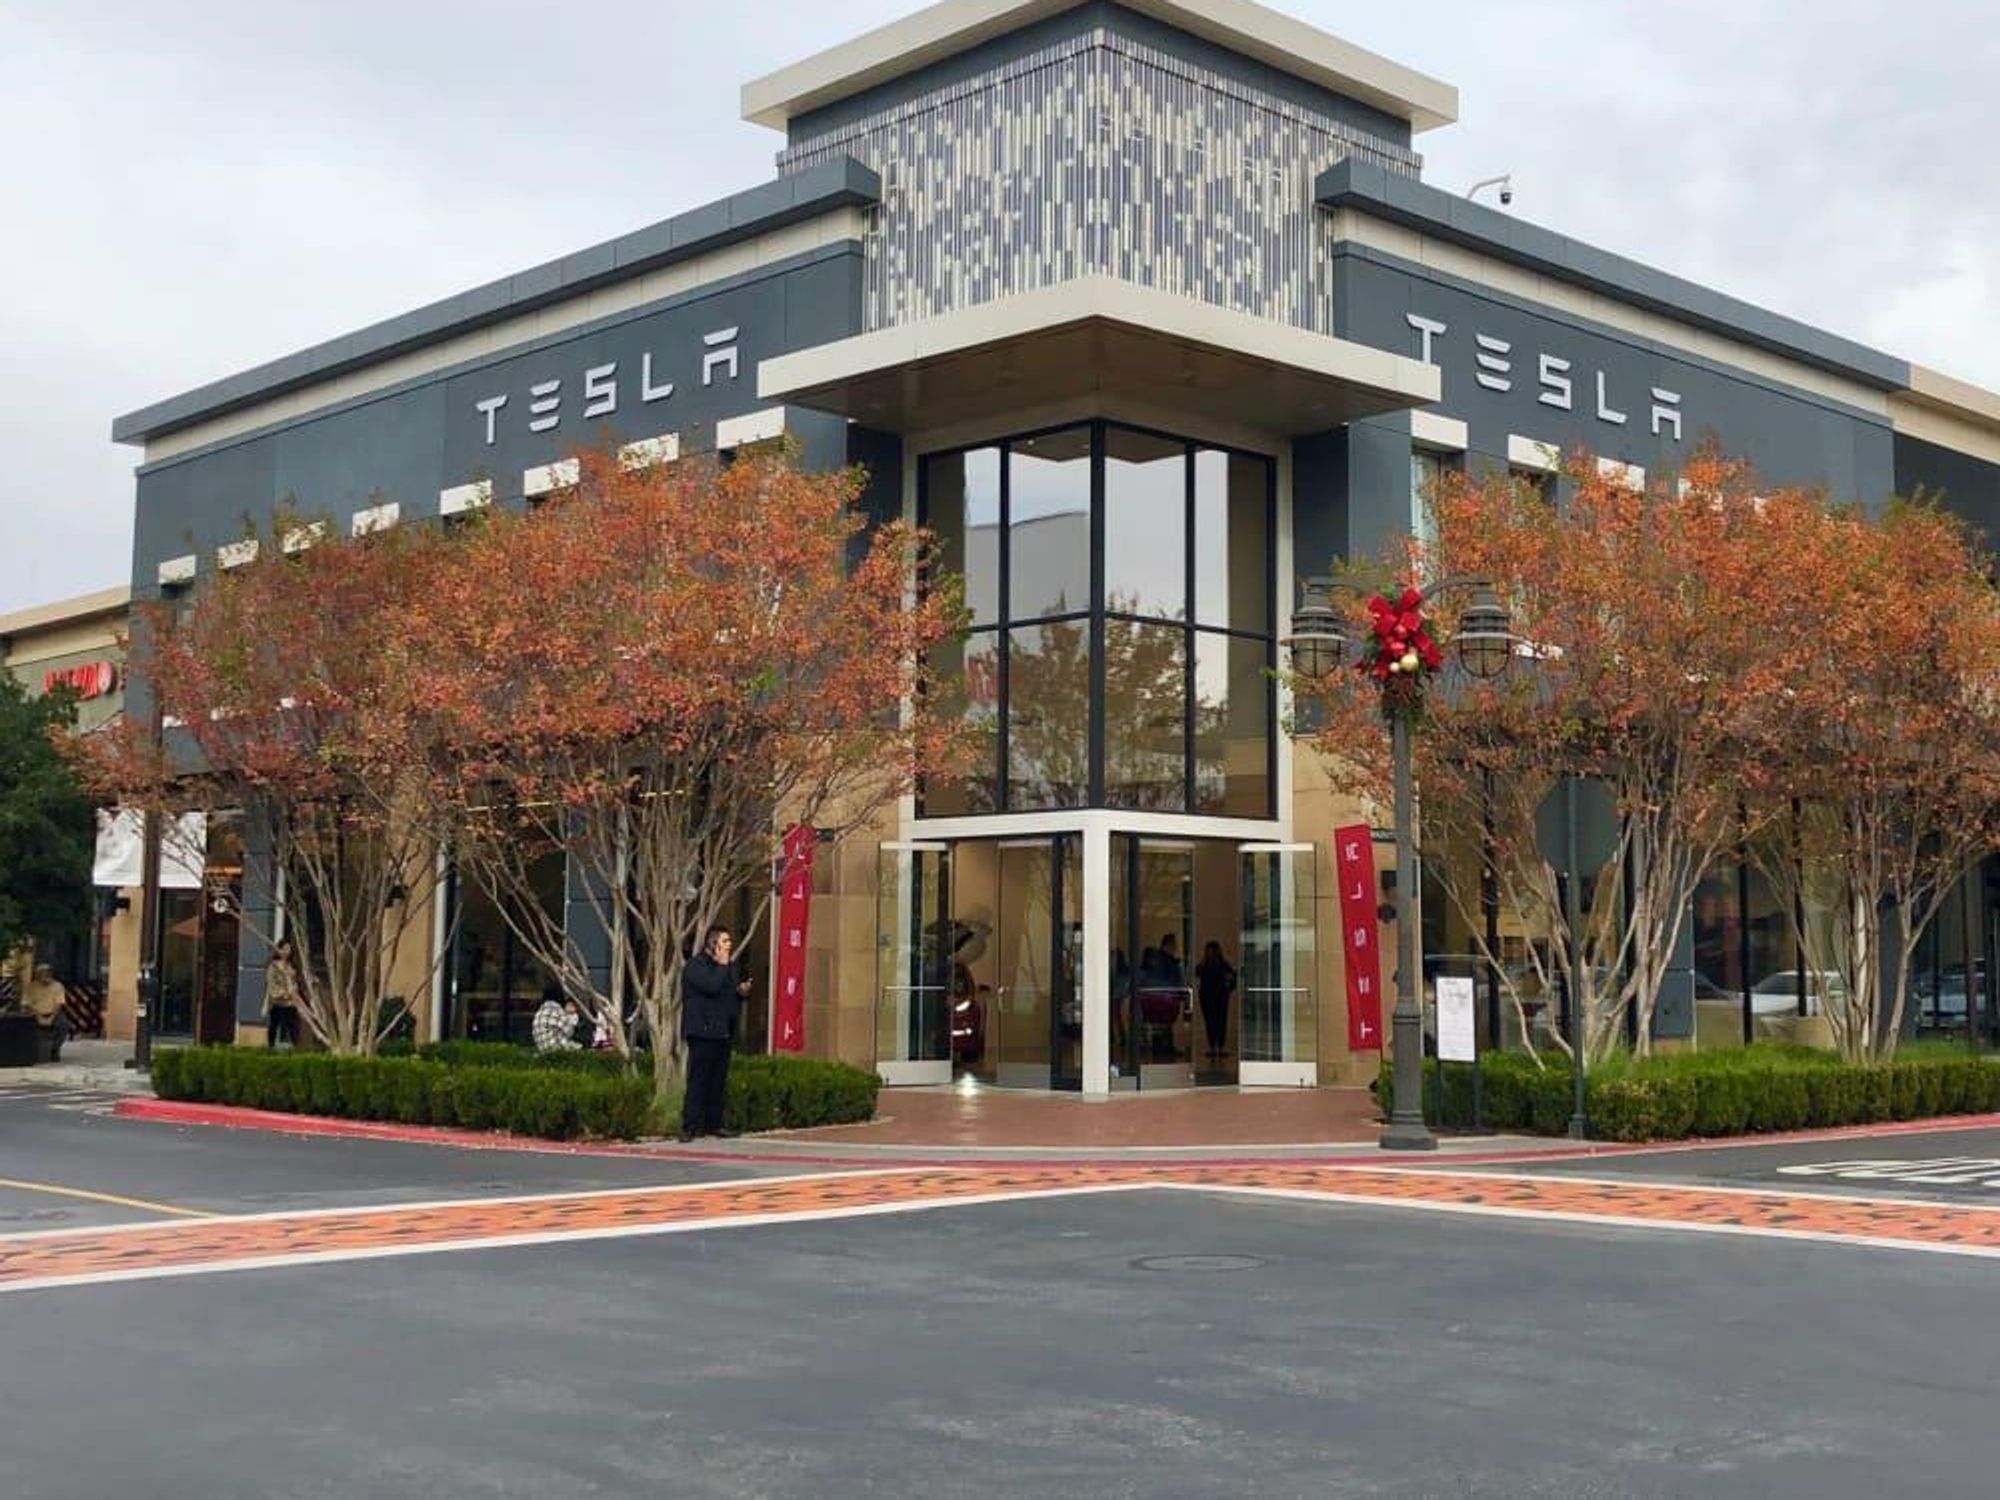 Tesla exterior showroom